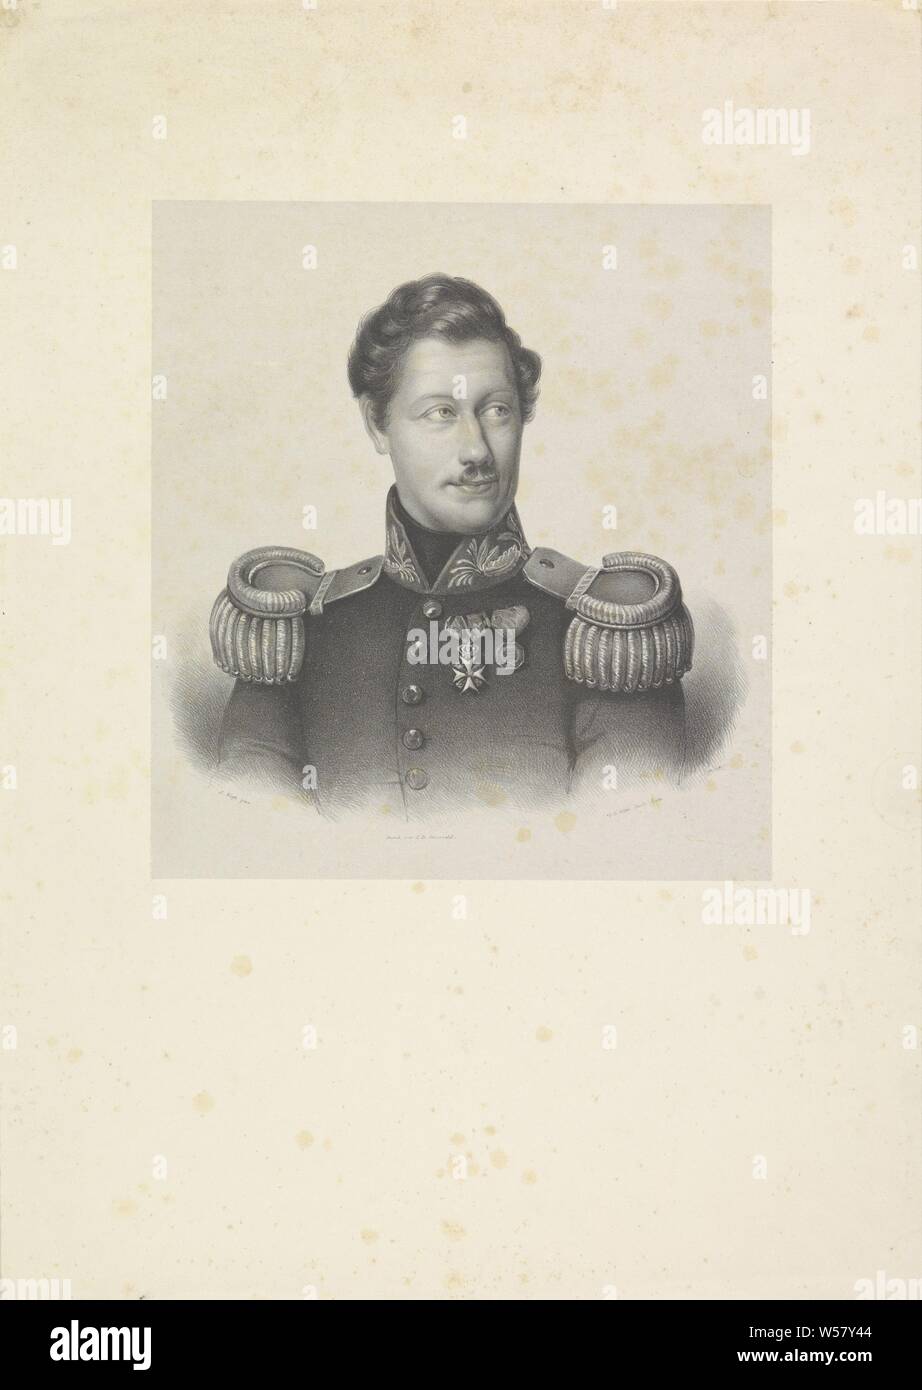 Portrait de W. A. Roest, la personne représentée est vêtu d'un uniforme militaire avec épaulettes et chevalerie sur la poitrine. Il regarde vers la droite., chef-d'engrenage : cap, Isaac Cornelis Elink Sterk (mentionné sur l'objet), La Haye, 1818 - 1871, papier, h 475 mm × W 337 mm Banque D'Images